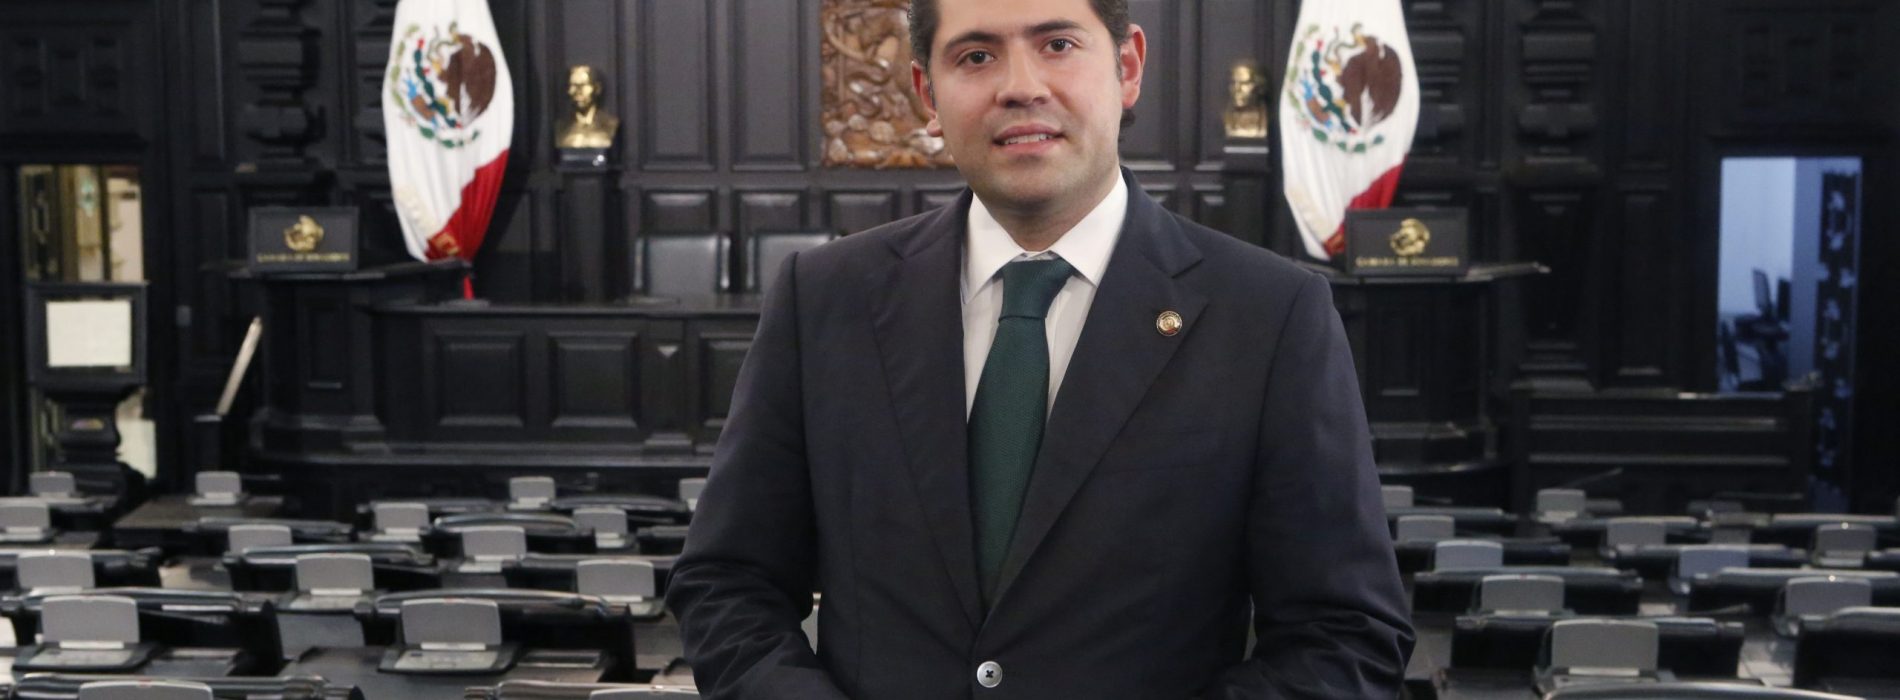 COMUNICADO DE PRENSA DEL SENADOR RAÚL BOLAÑOS-CACHO CUÉ, RESPECTO AL DESARROLLO DE LAS ENERGÍAS RENOVABLES EN MÉXICO.